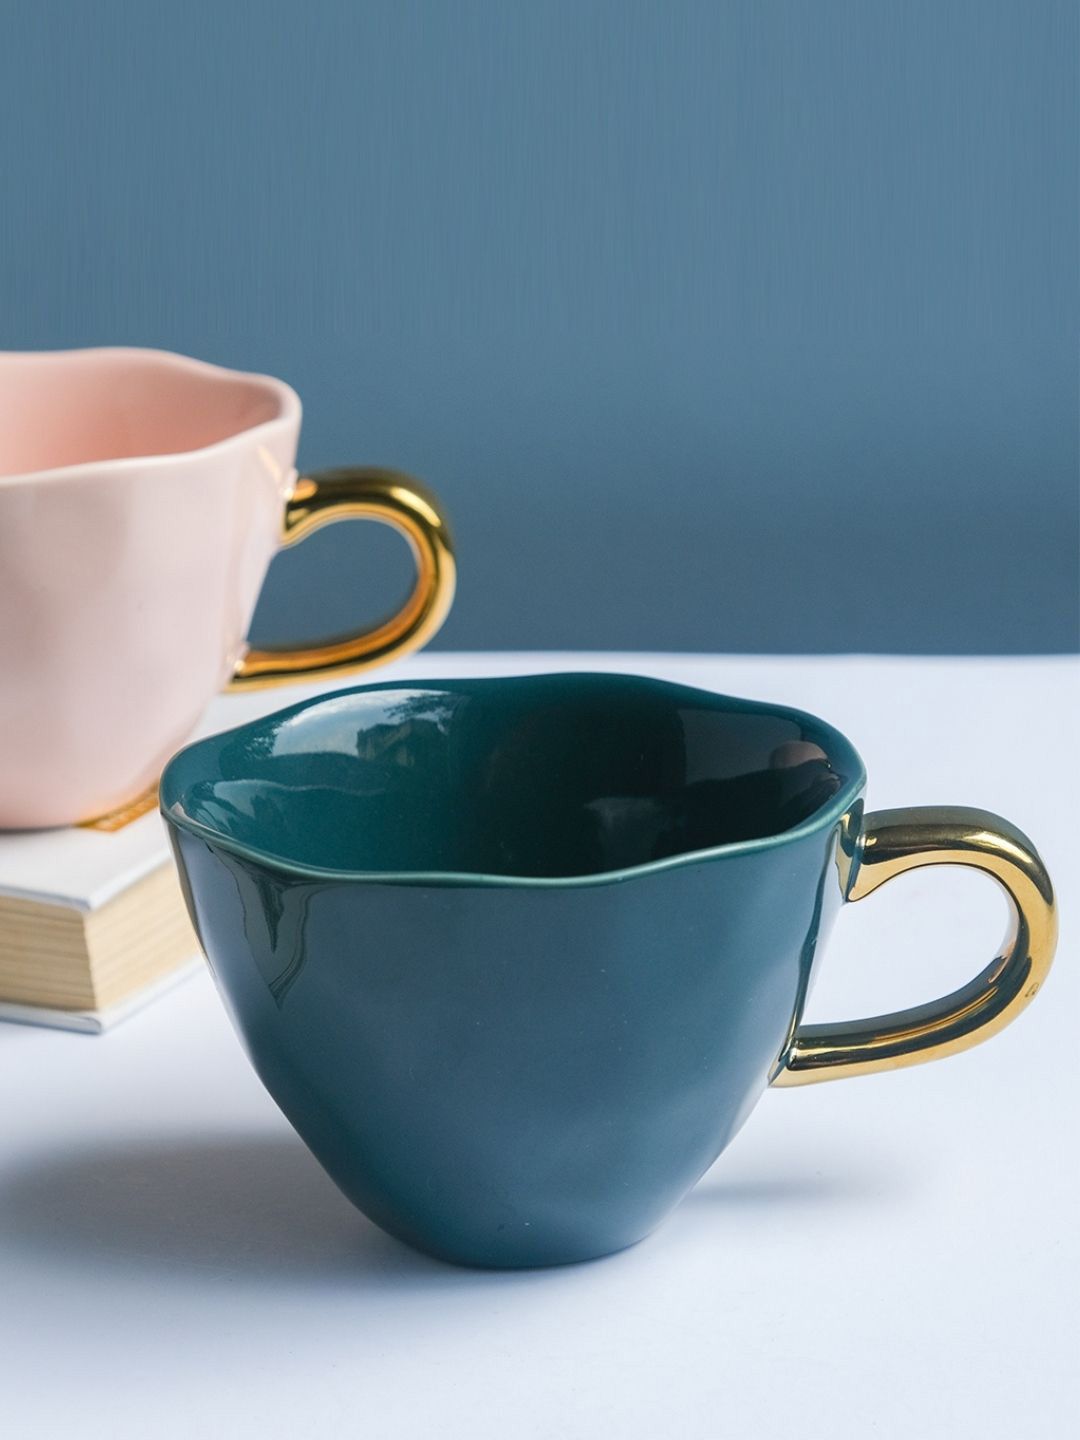 Nestasia Dark Blue Ceramic Tea Cup Price in India